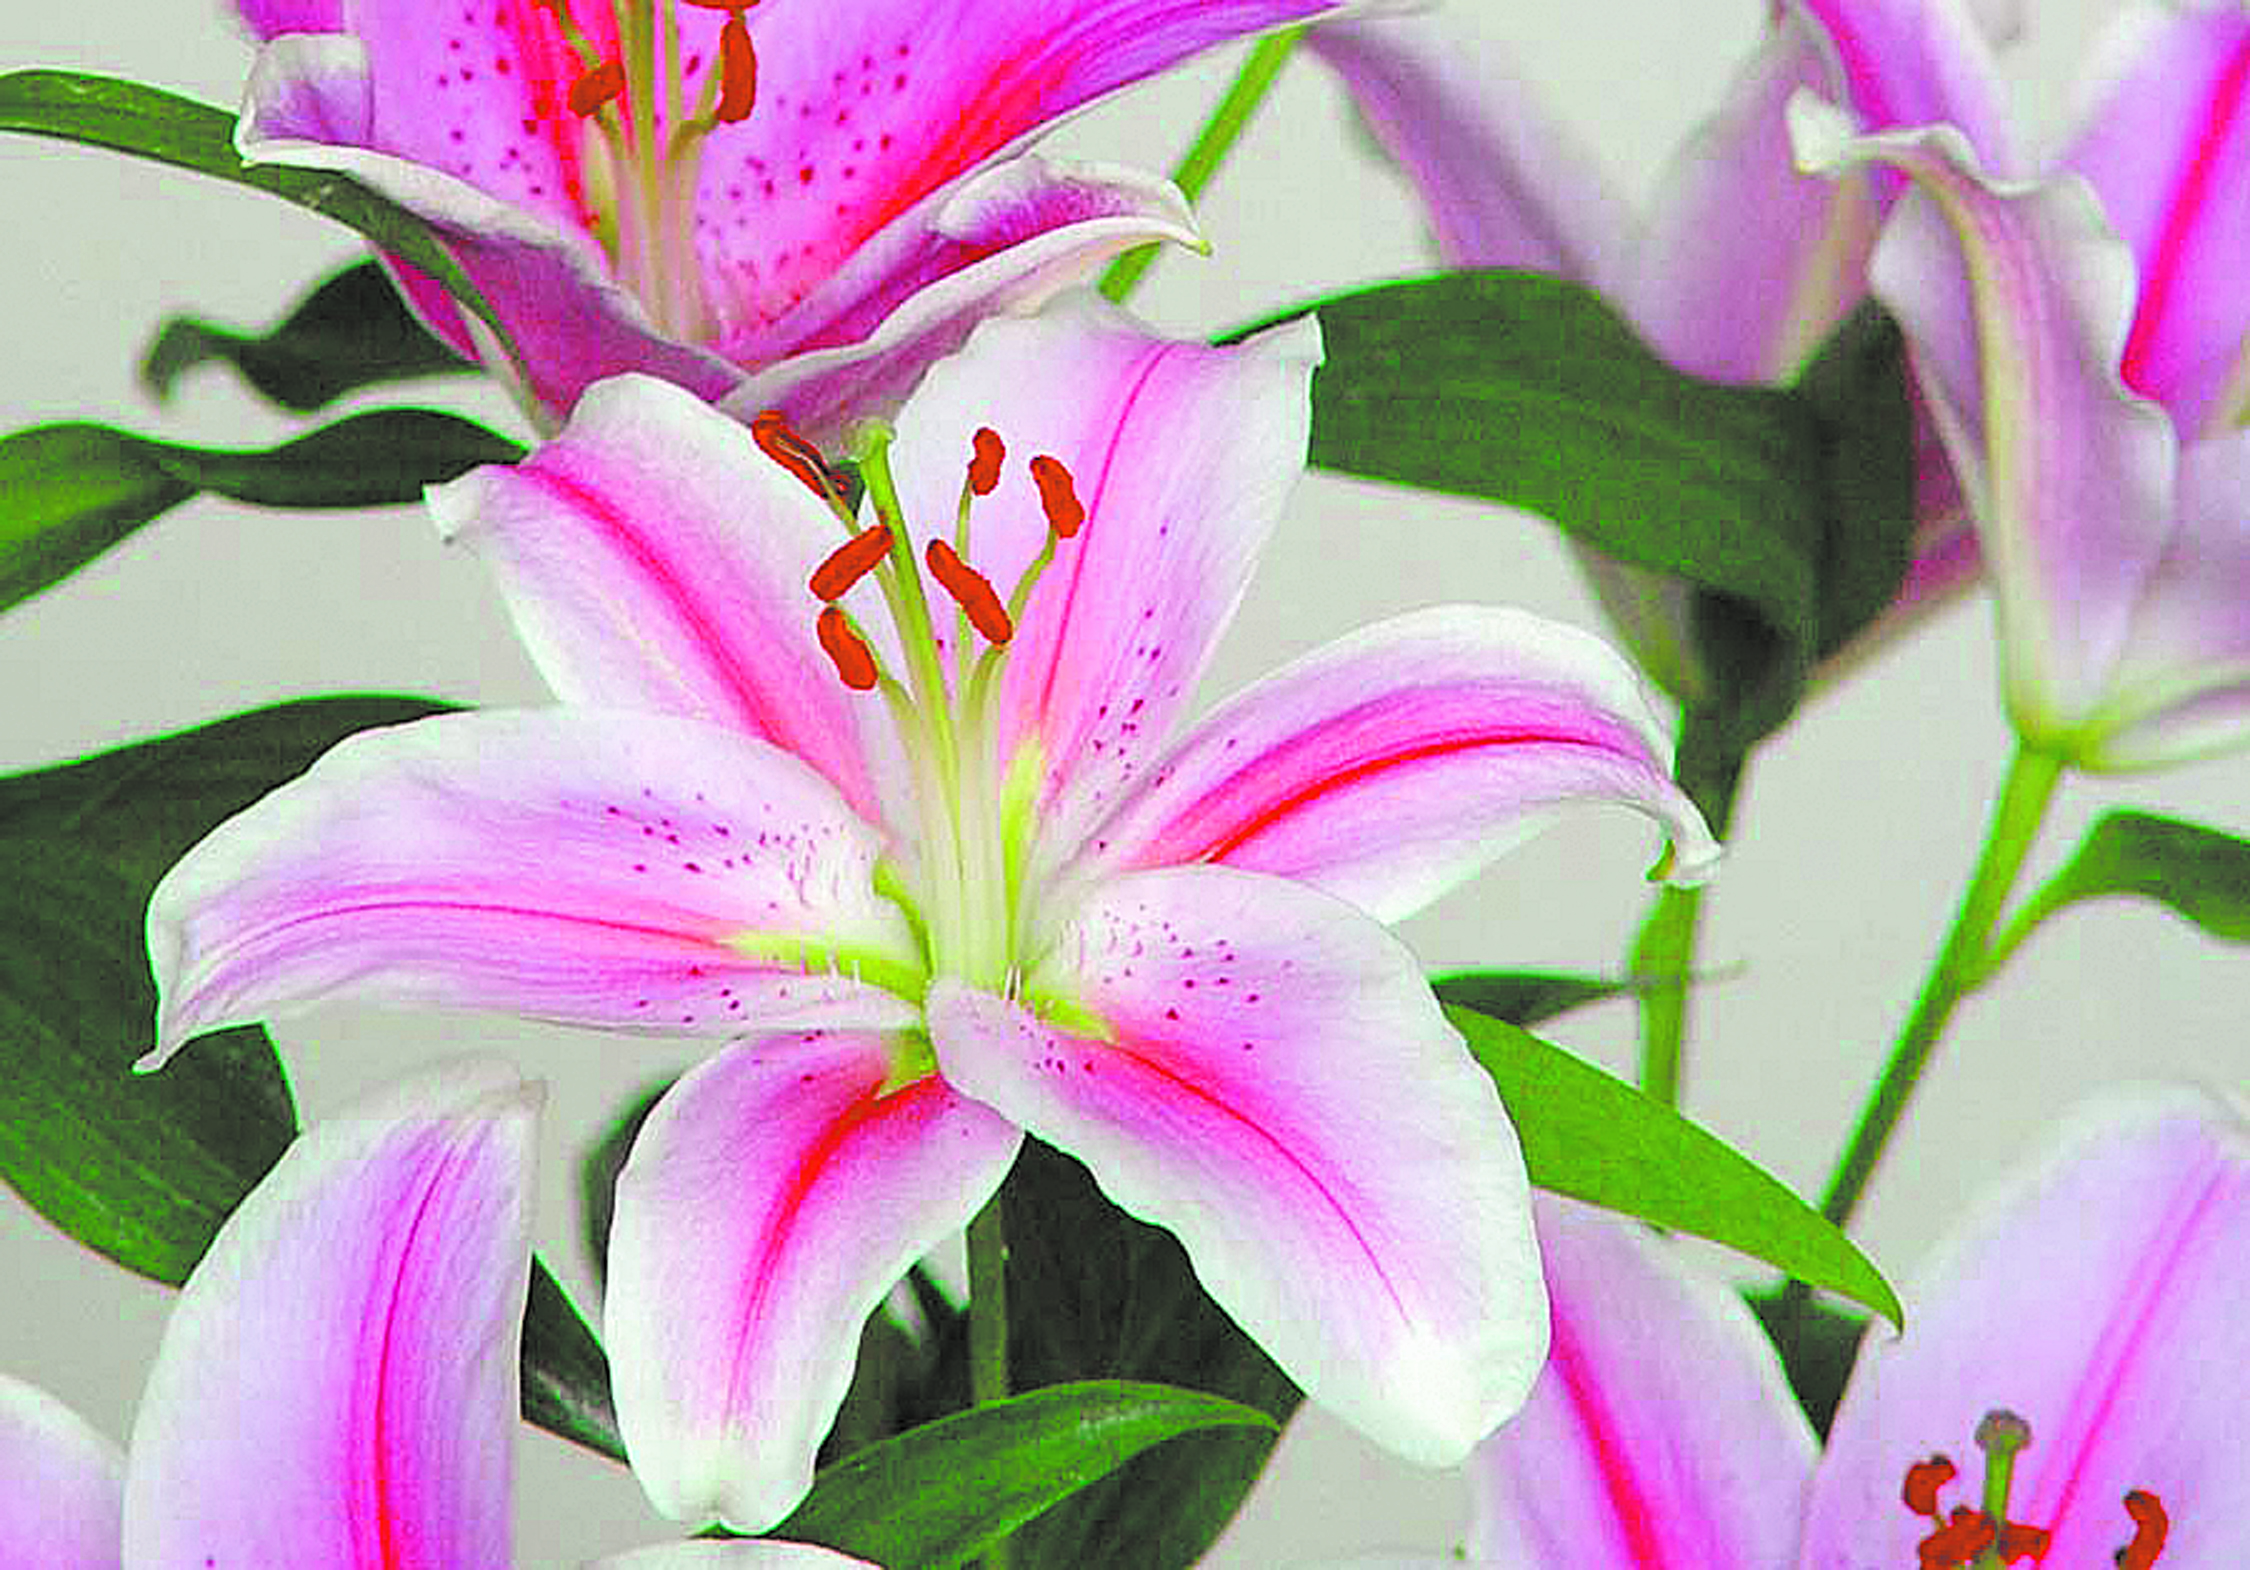 El lilium es una planta que brinda flores de gran tamaño, vistosas, de colores impactantes.